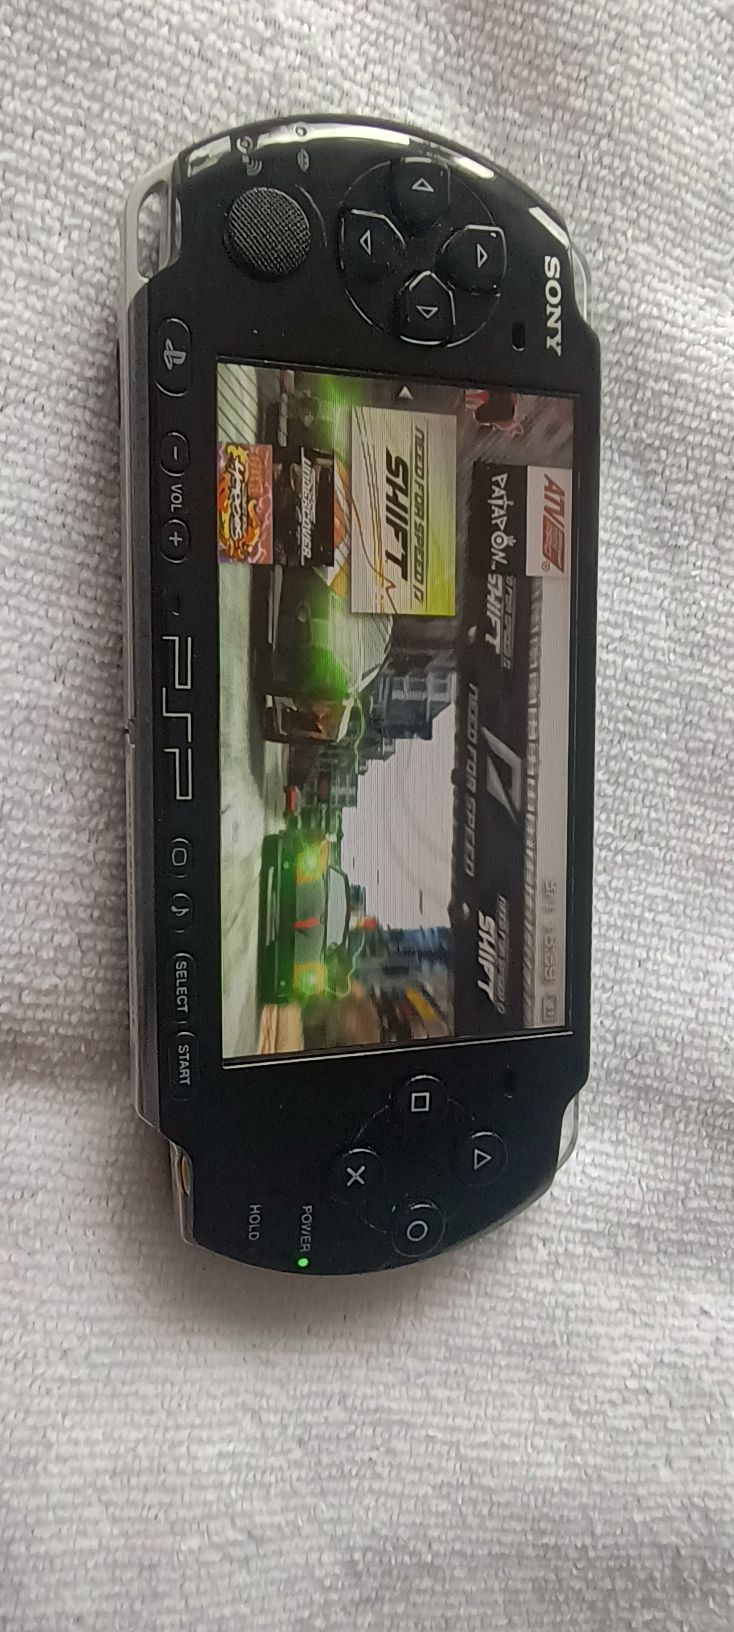 PSP model 3004 z wifi Plus Gry